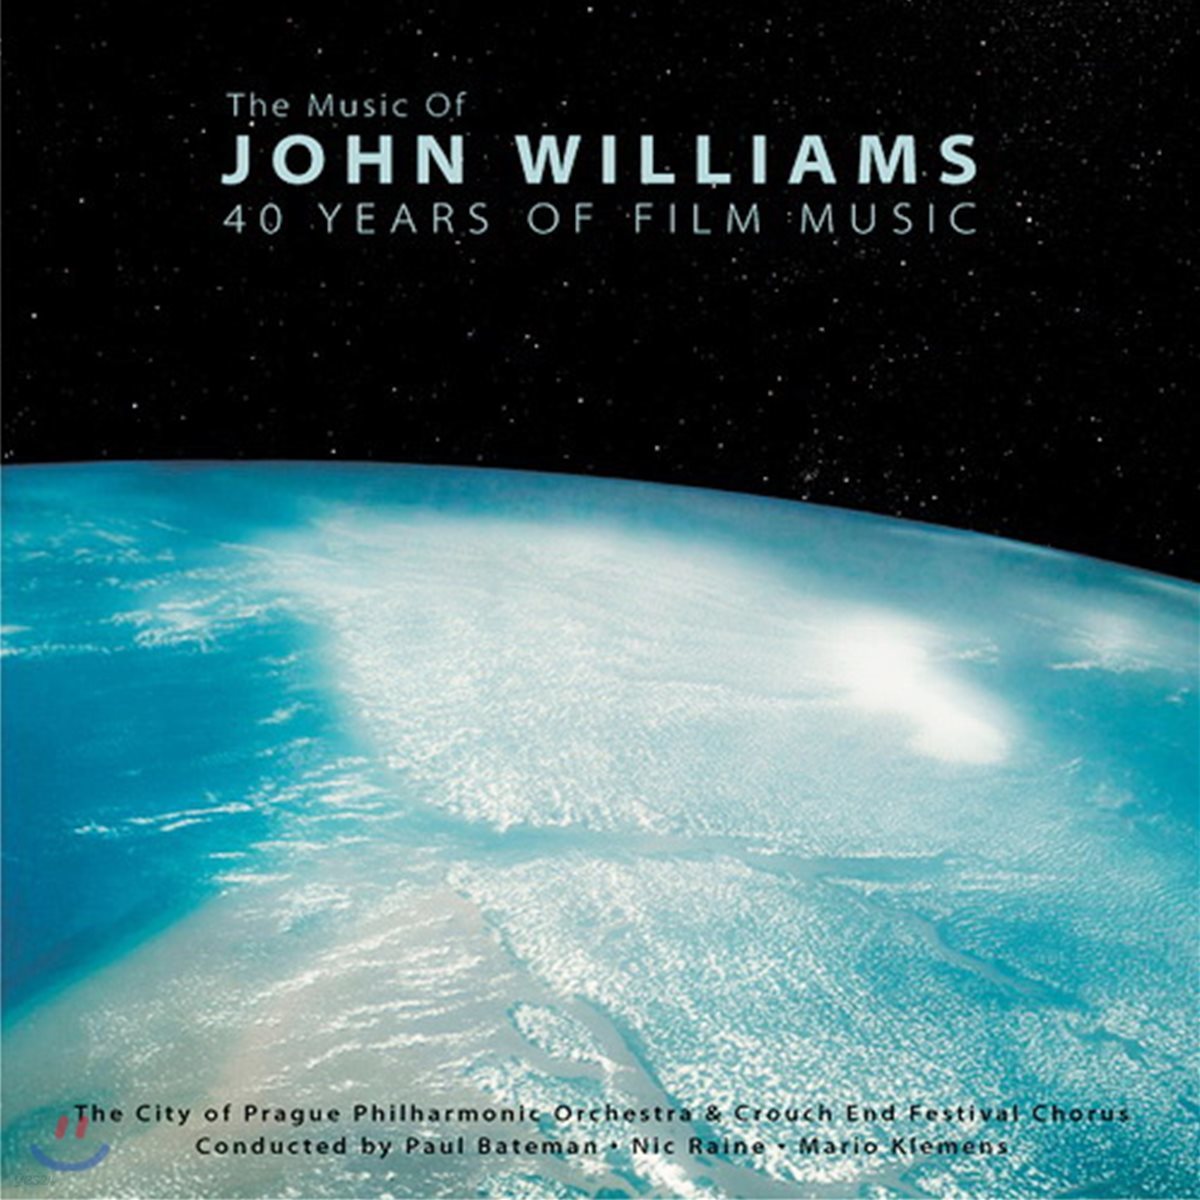 존 윌리엄스의 영화음악 모음집 (The Music of John Williams: 40 Years Of Film Music)